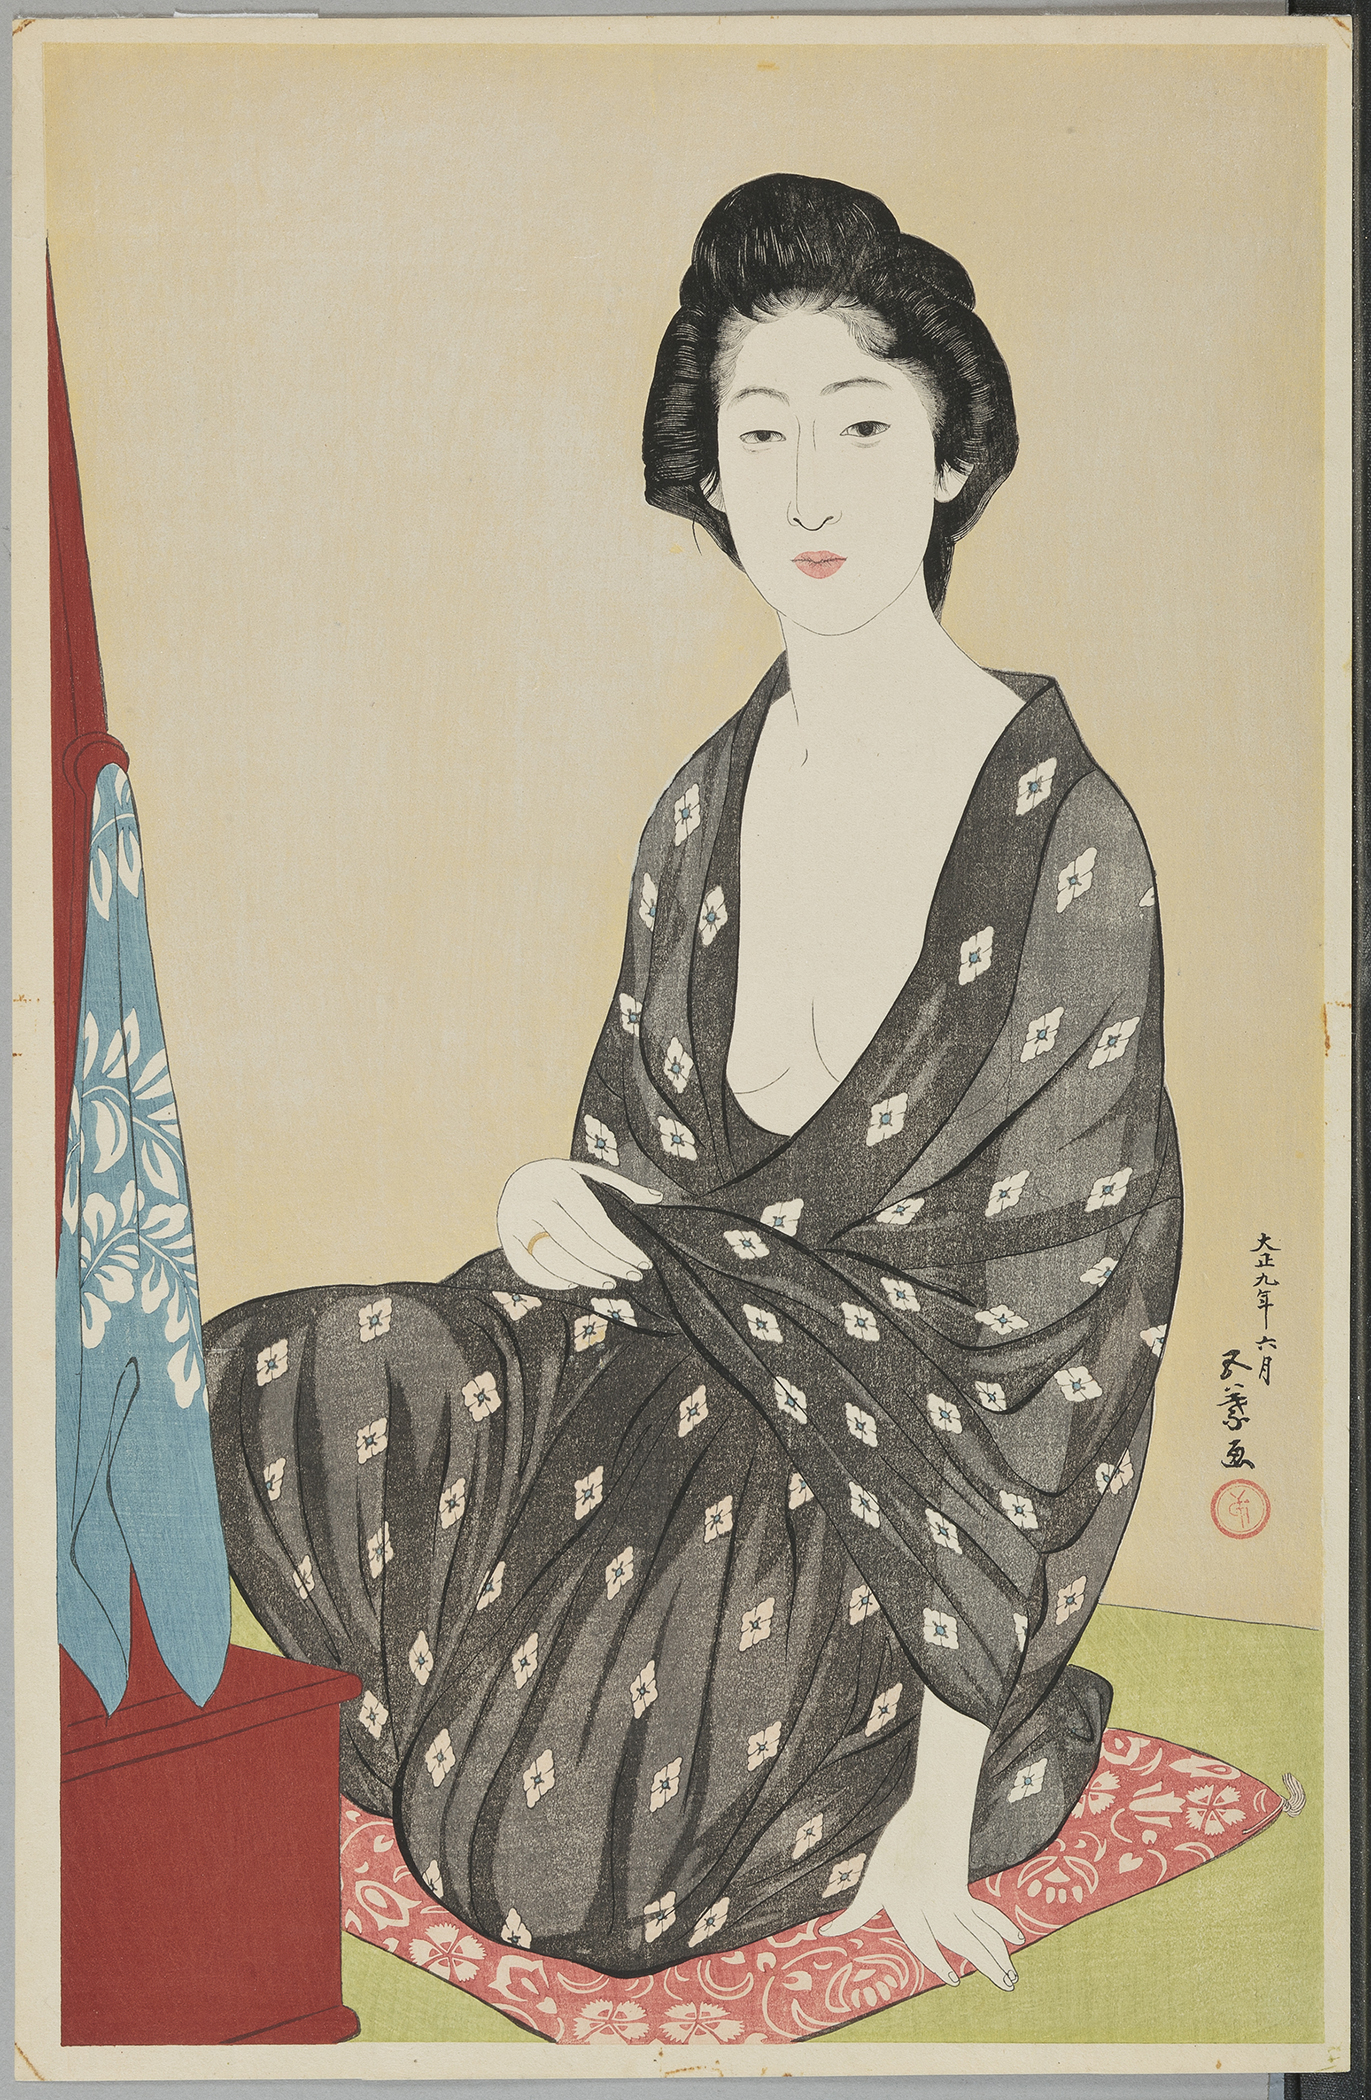 穿夏季和服的女人 by 五叶 桥口 - 1920 - 45.1 x 29.4 cm 